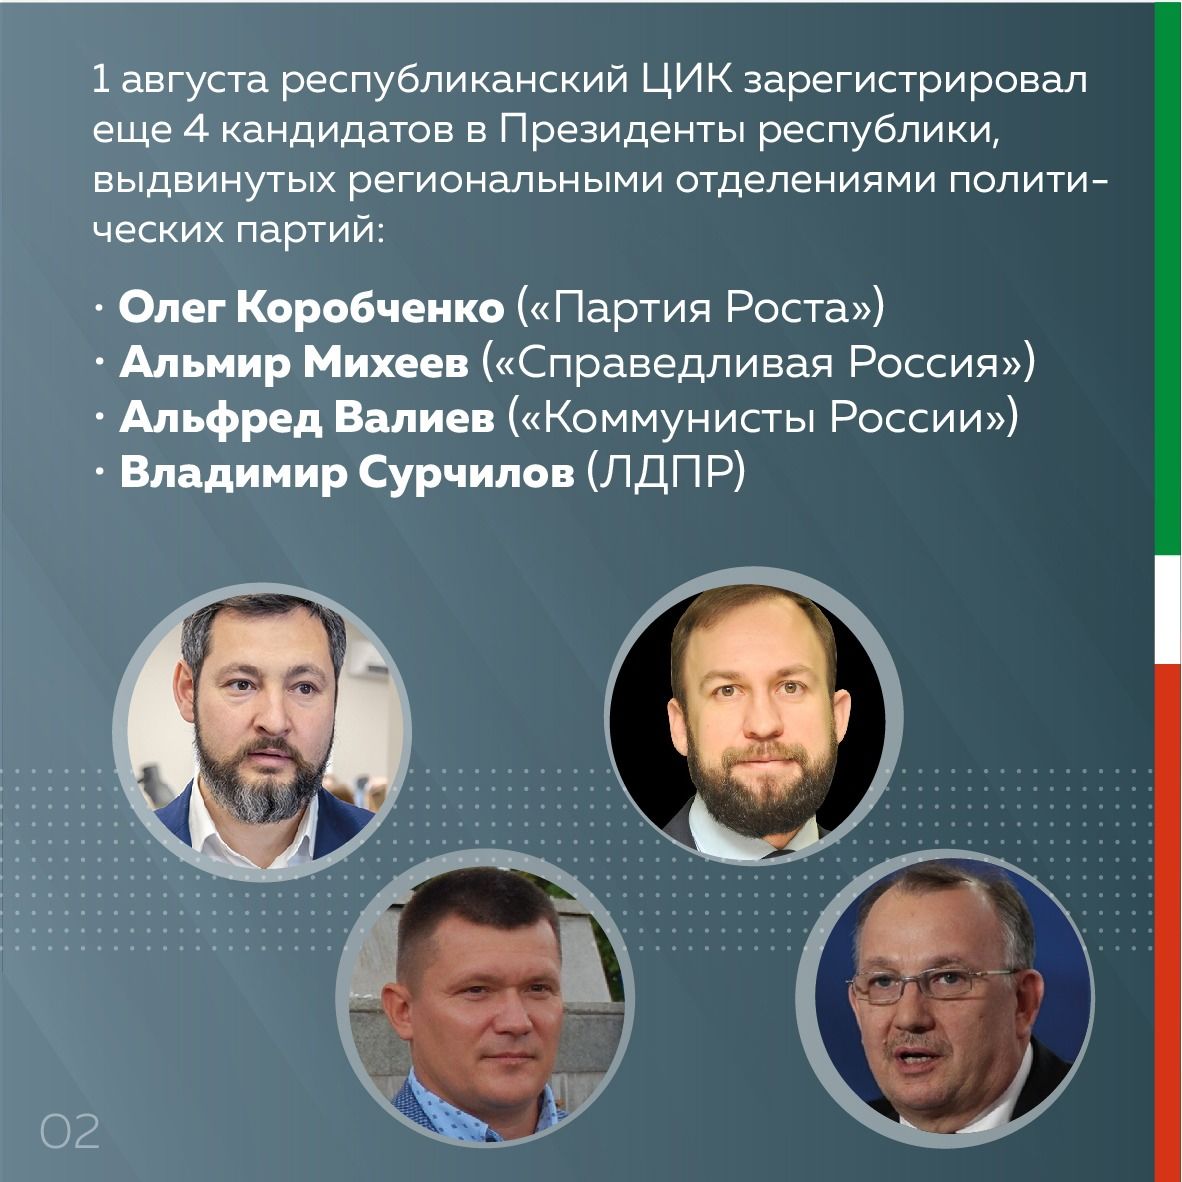 ЦИК Татарстана зарегистрировал еще 4-х кандидатов в Президенты республики